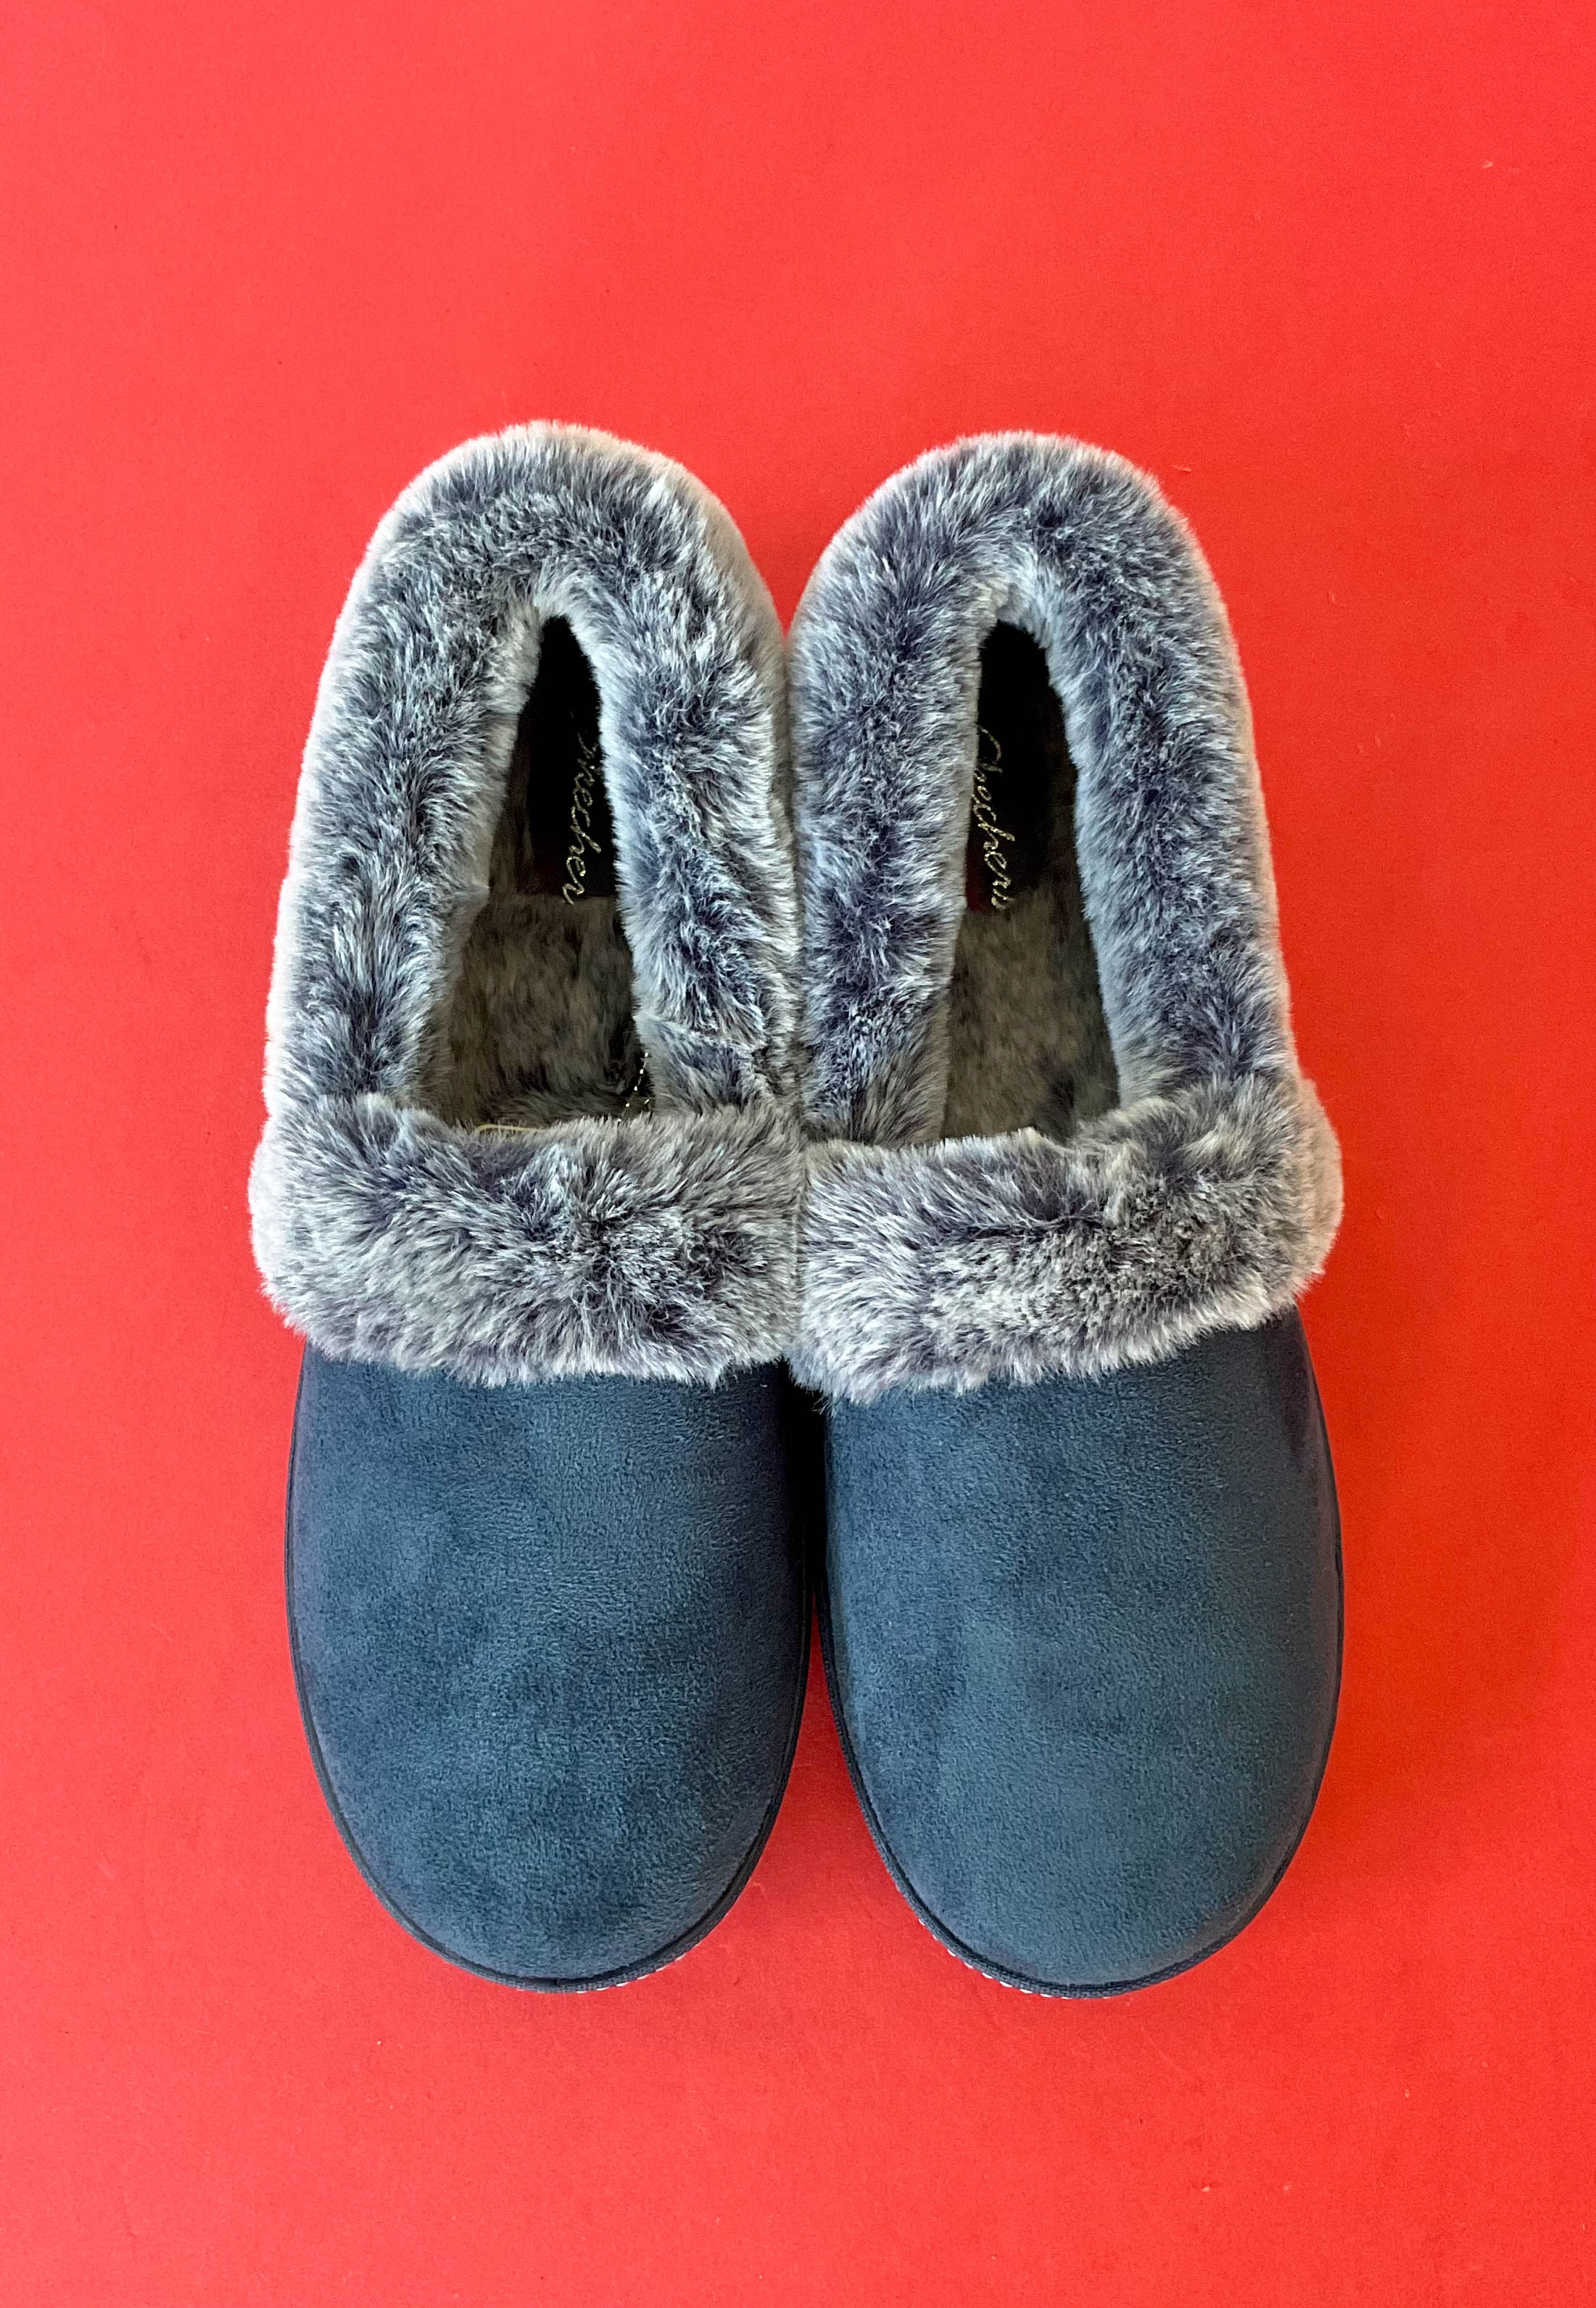 Skechers luxury slippers